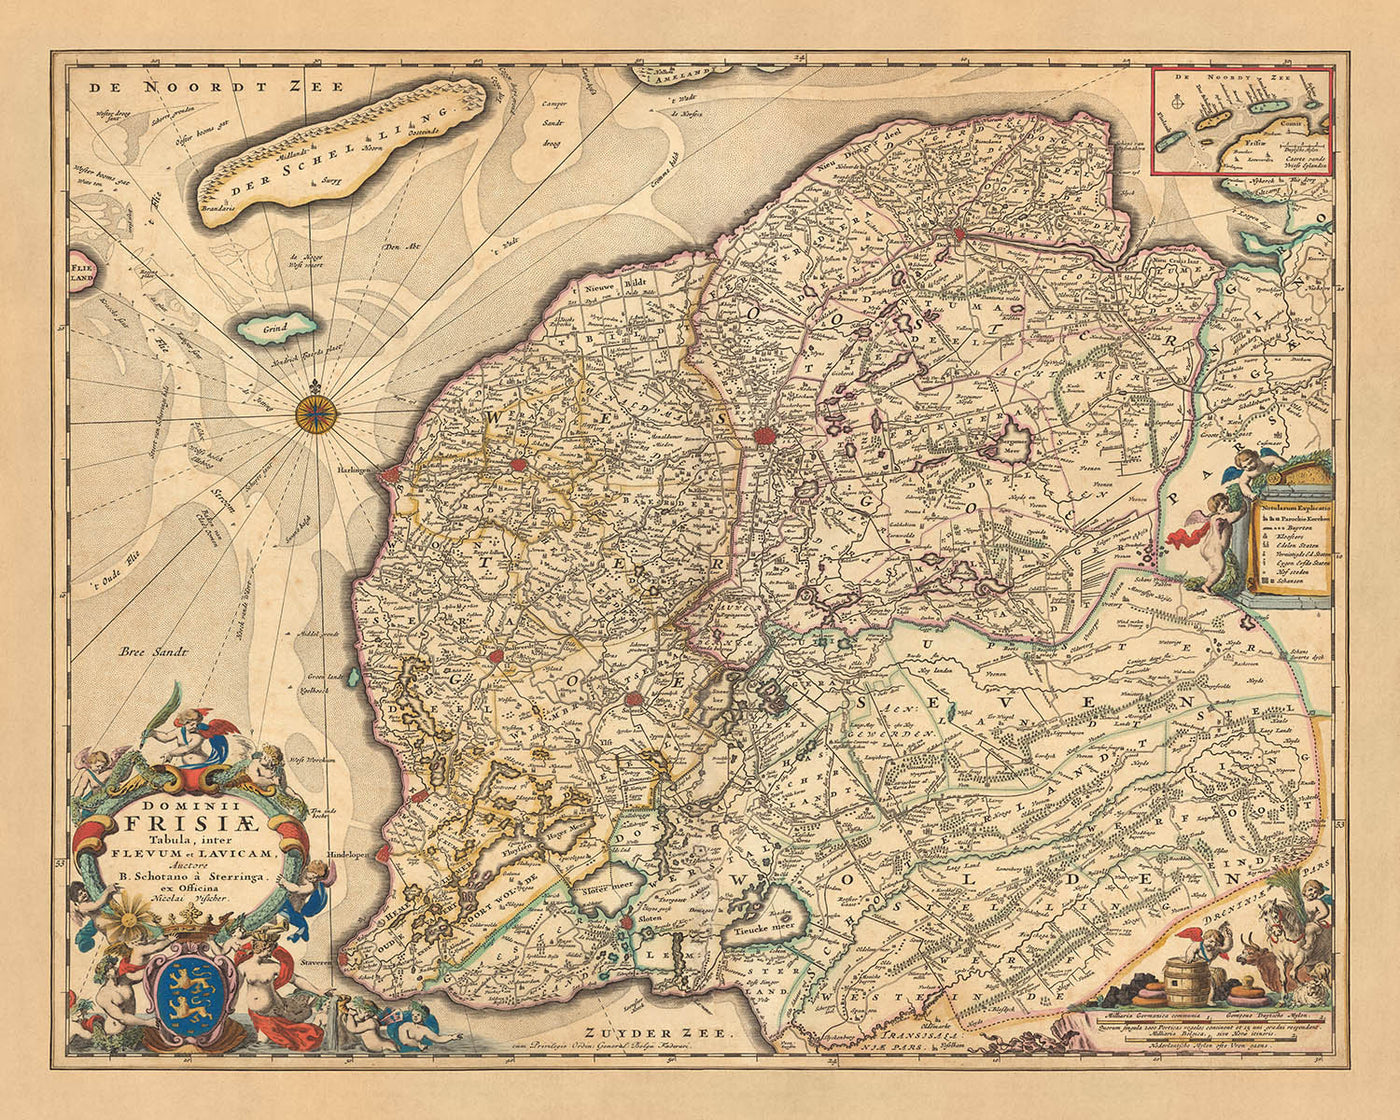 Old Map of Friesland by Visscher, 1690: Leeuwarden, Drachten, Heerenveen, Sneek, De Alde Feanen National Park